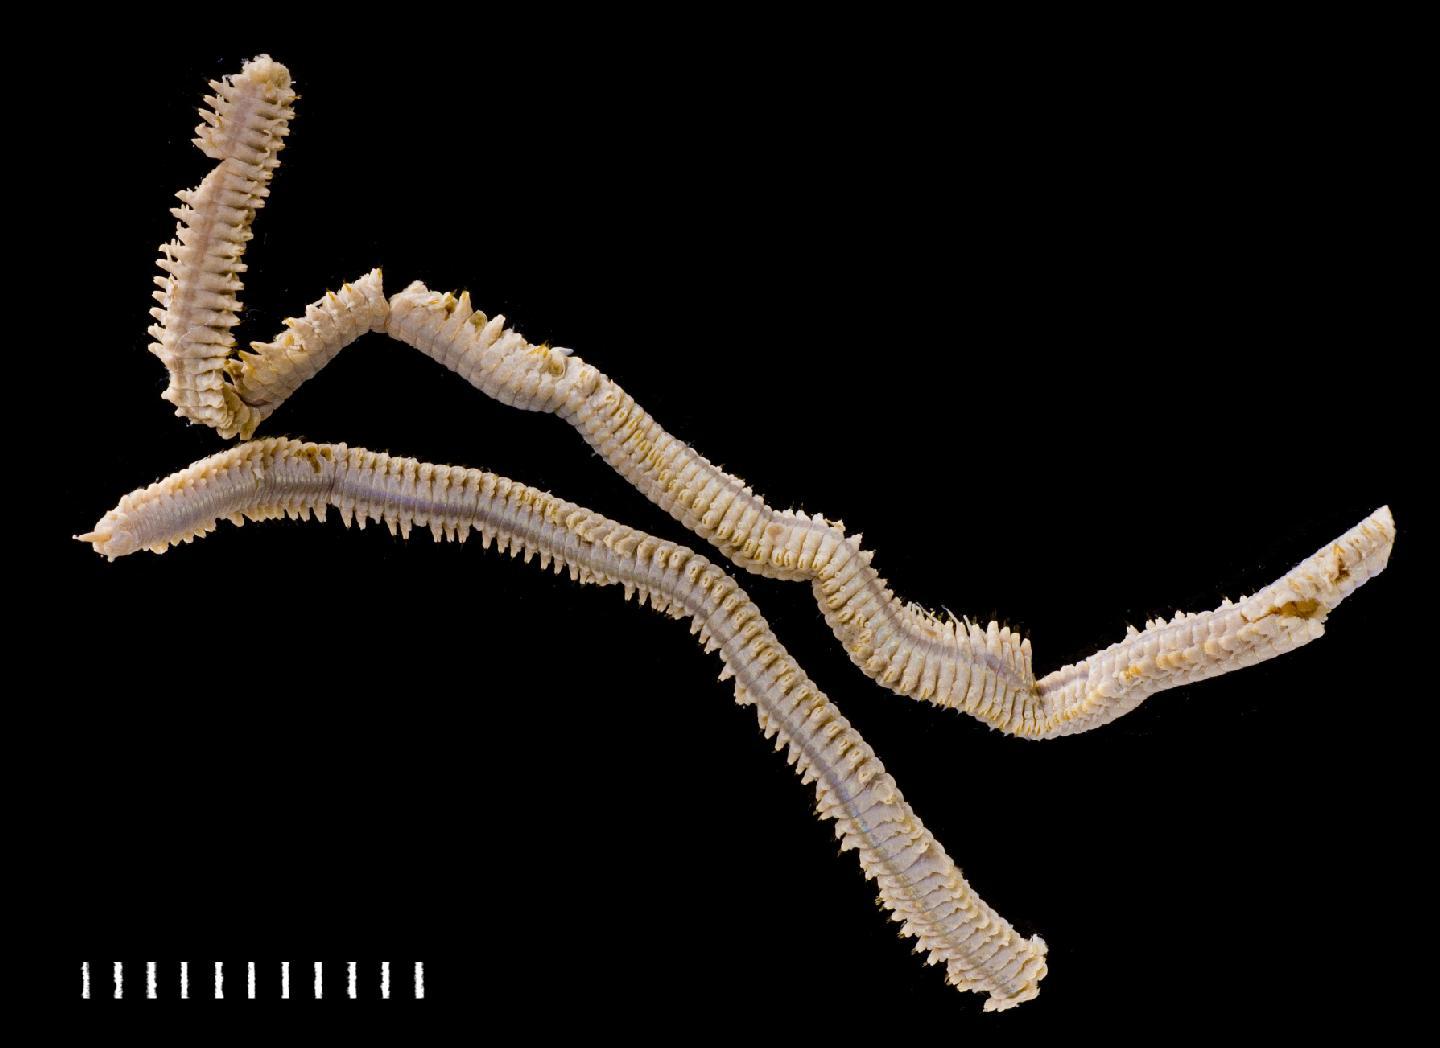 To NHMUK collection (Benhamipolynoe antipathicola (Benham, 1927); holotype; NHMUK:ecatalogue:3536275)